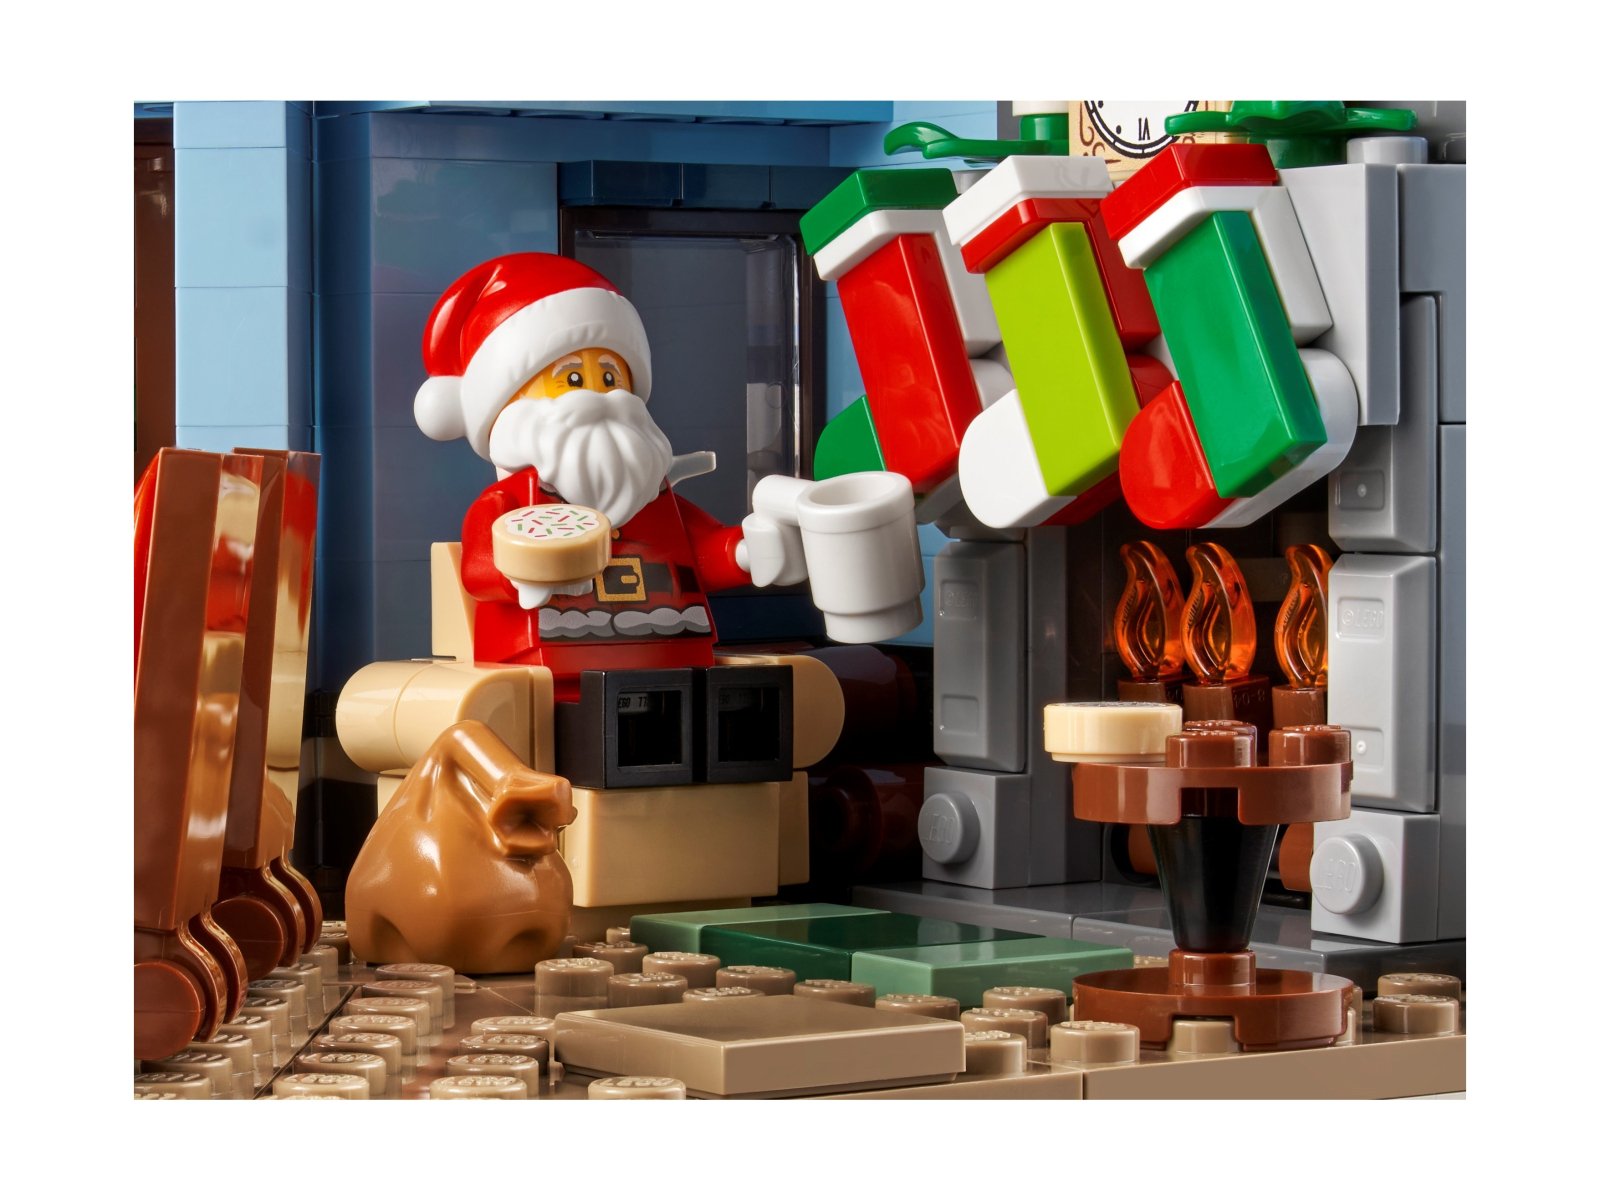 LEGO 10293 Wizyta Świętego Mikołaja